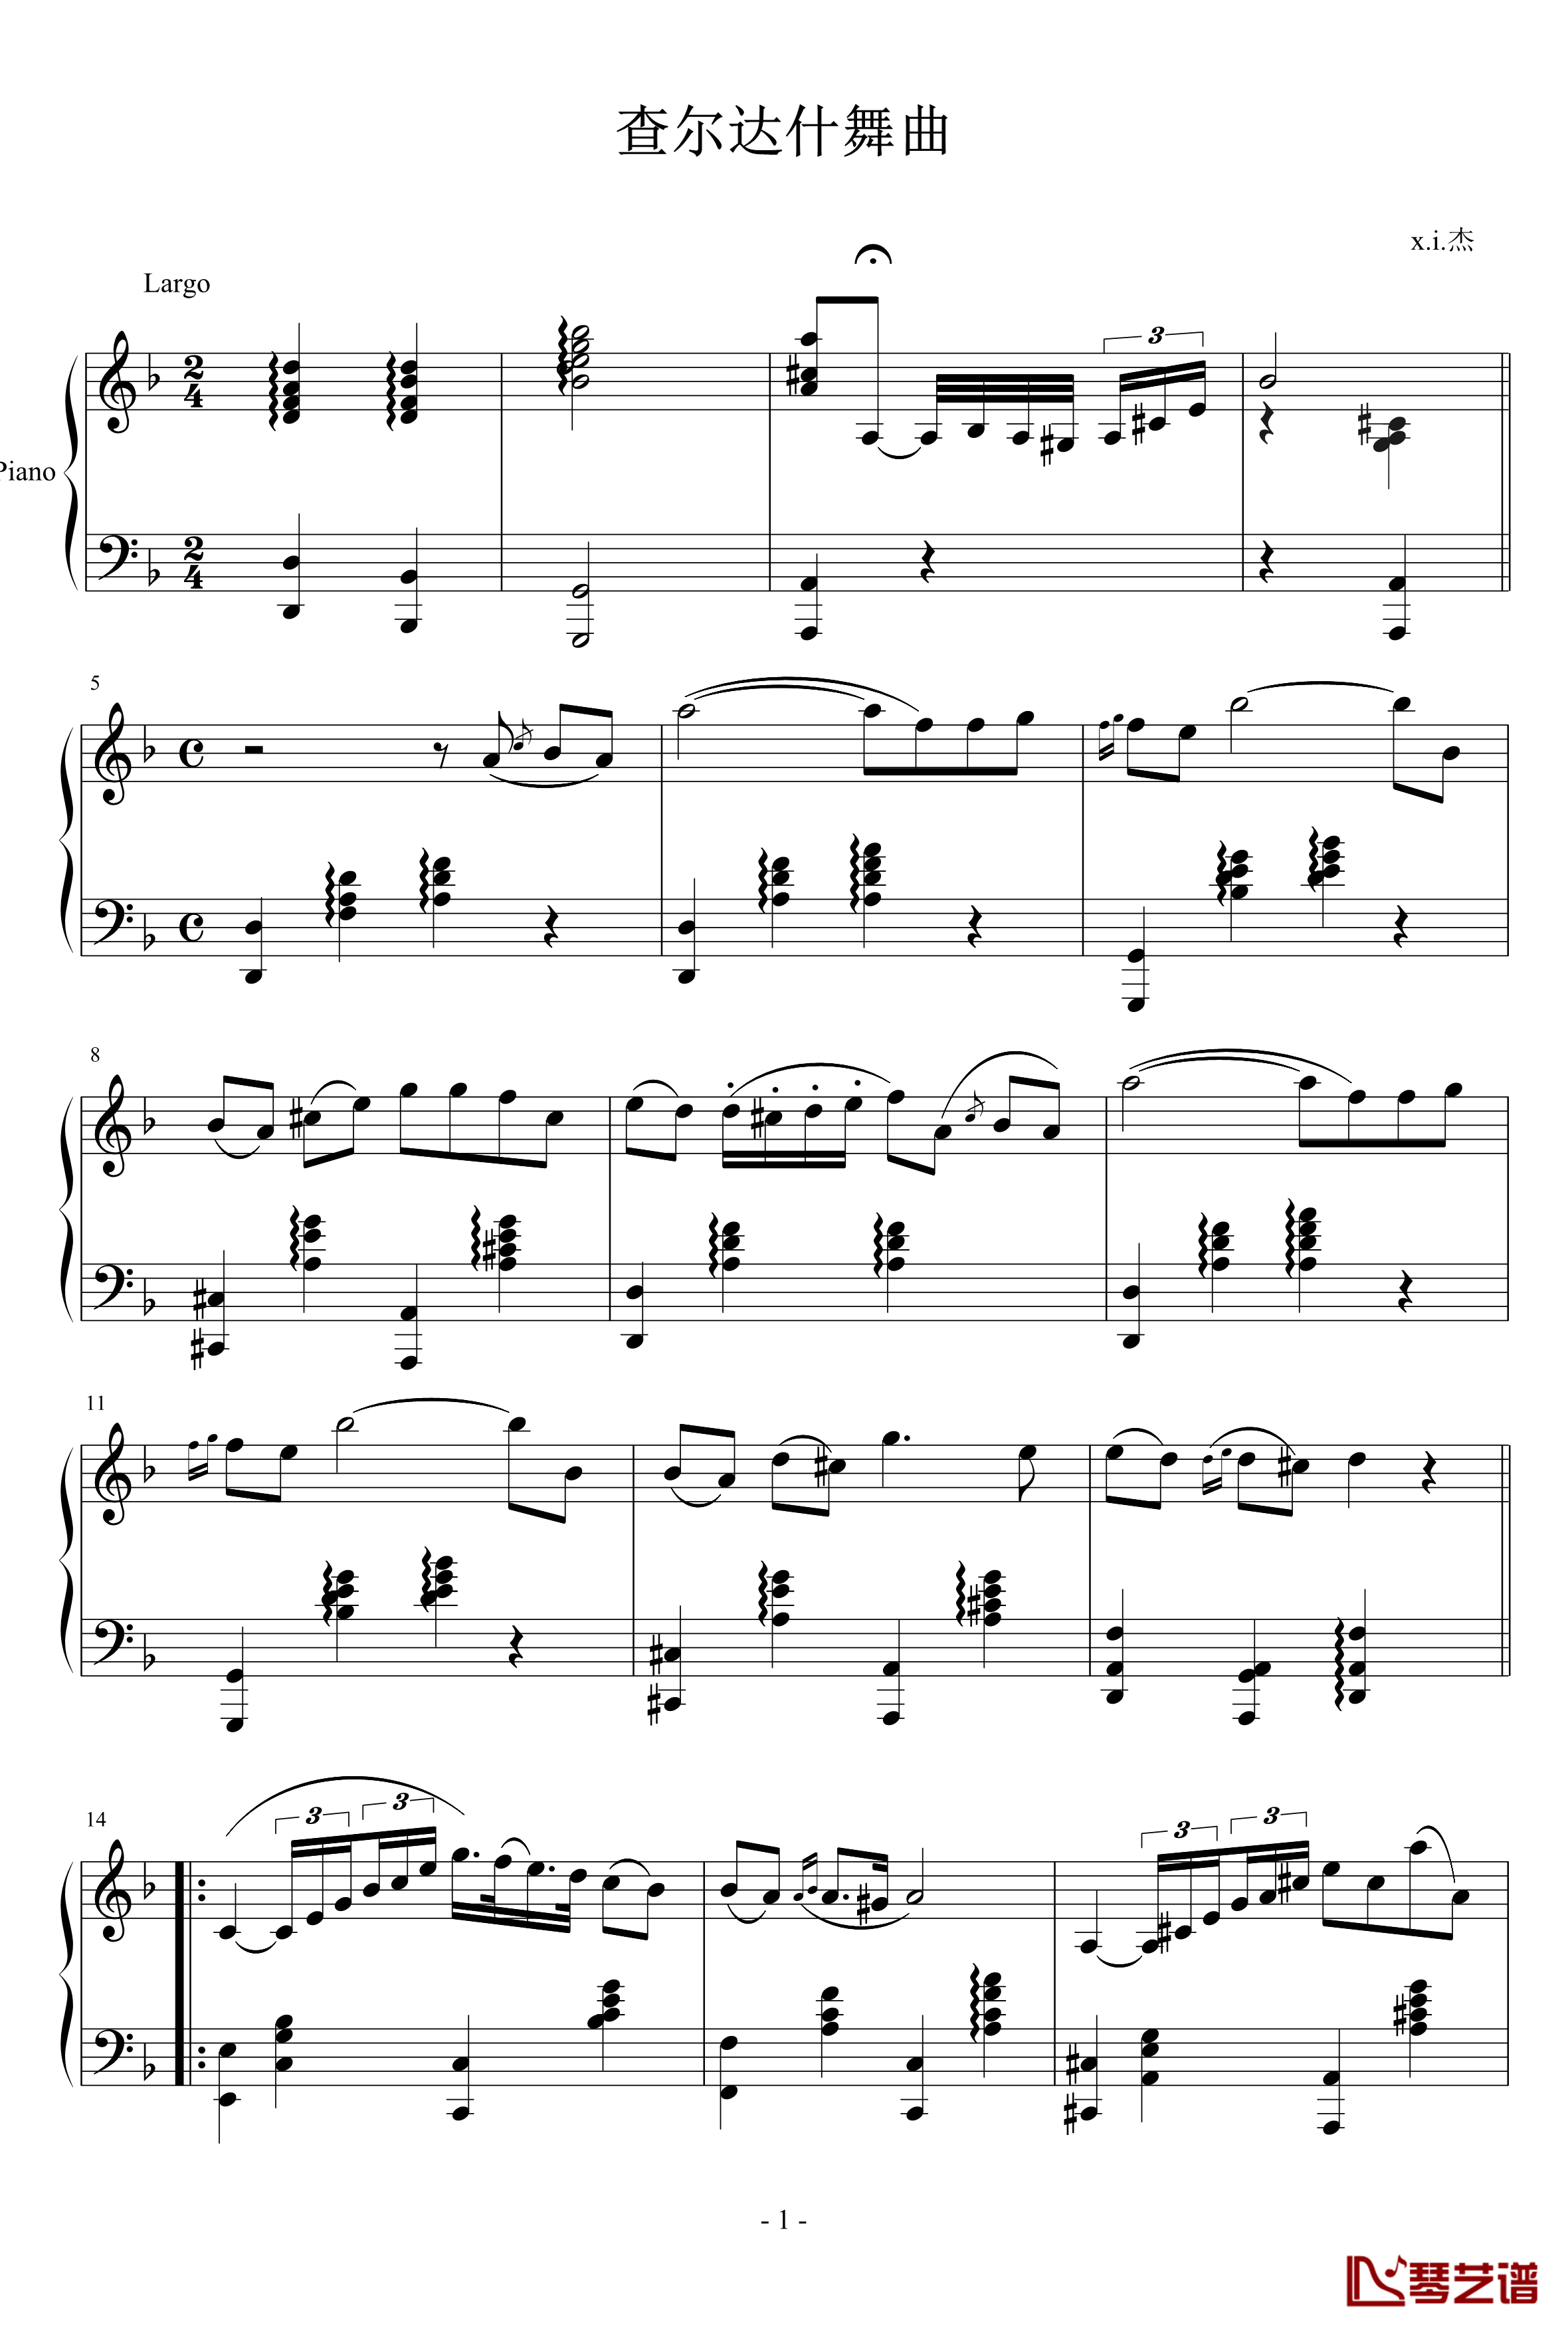 查尔达什舞曲钢琴谱-钢琴版-蒙蒂1